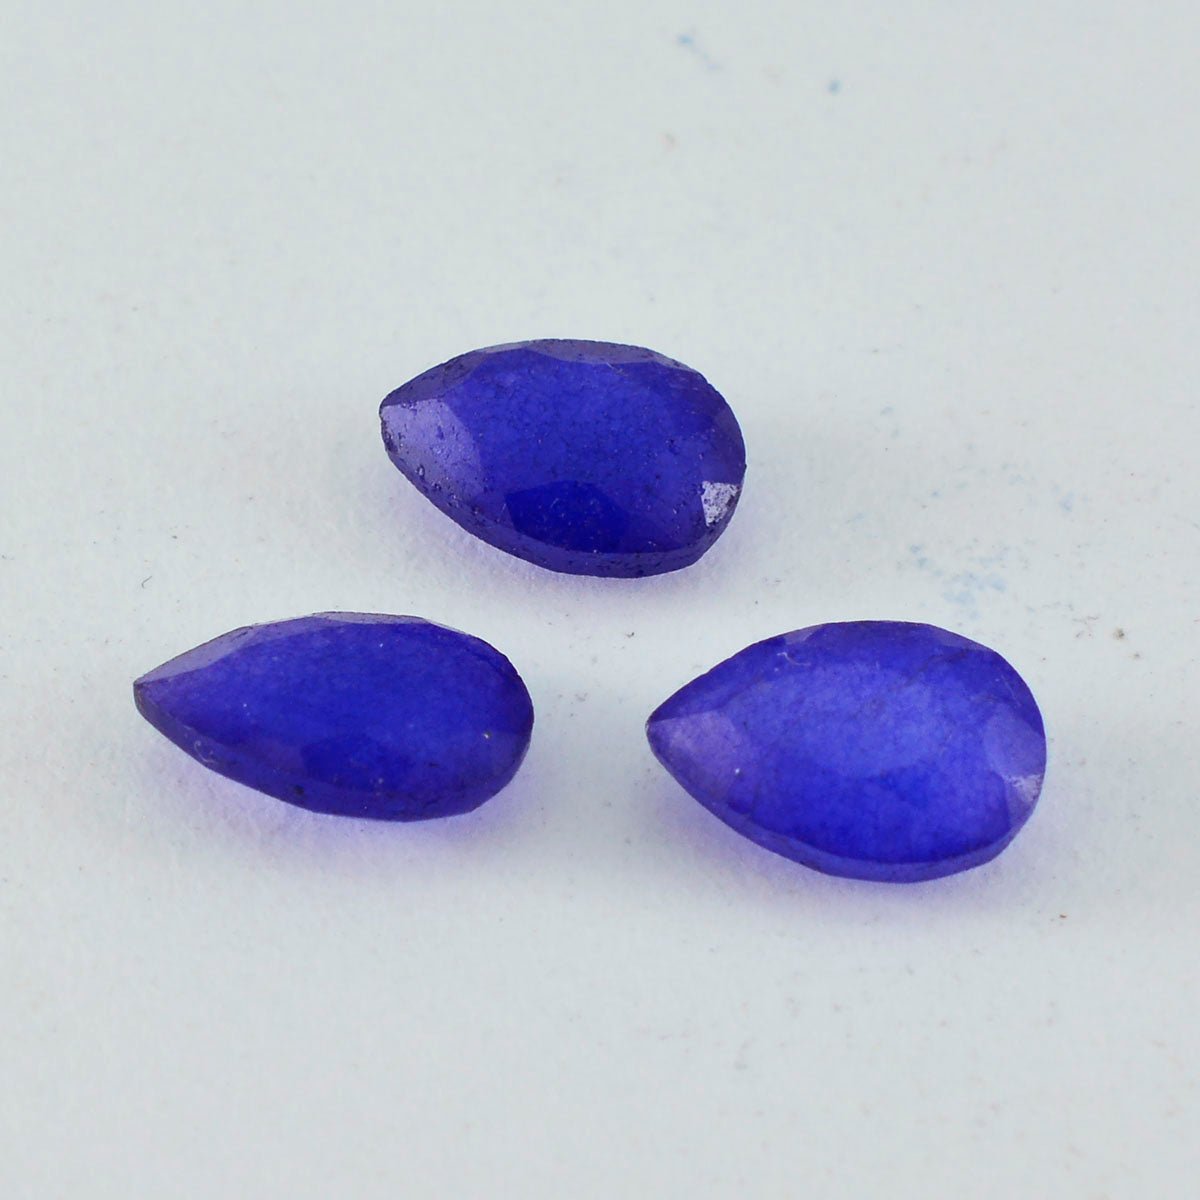 Riyogems 1 pieza de jaspe azul auténtico facetado, 7x10 mm, forma de pera, piedra preciosa de gran calidad